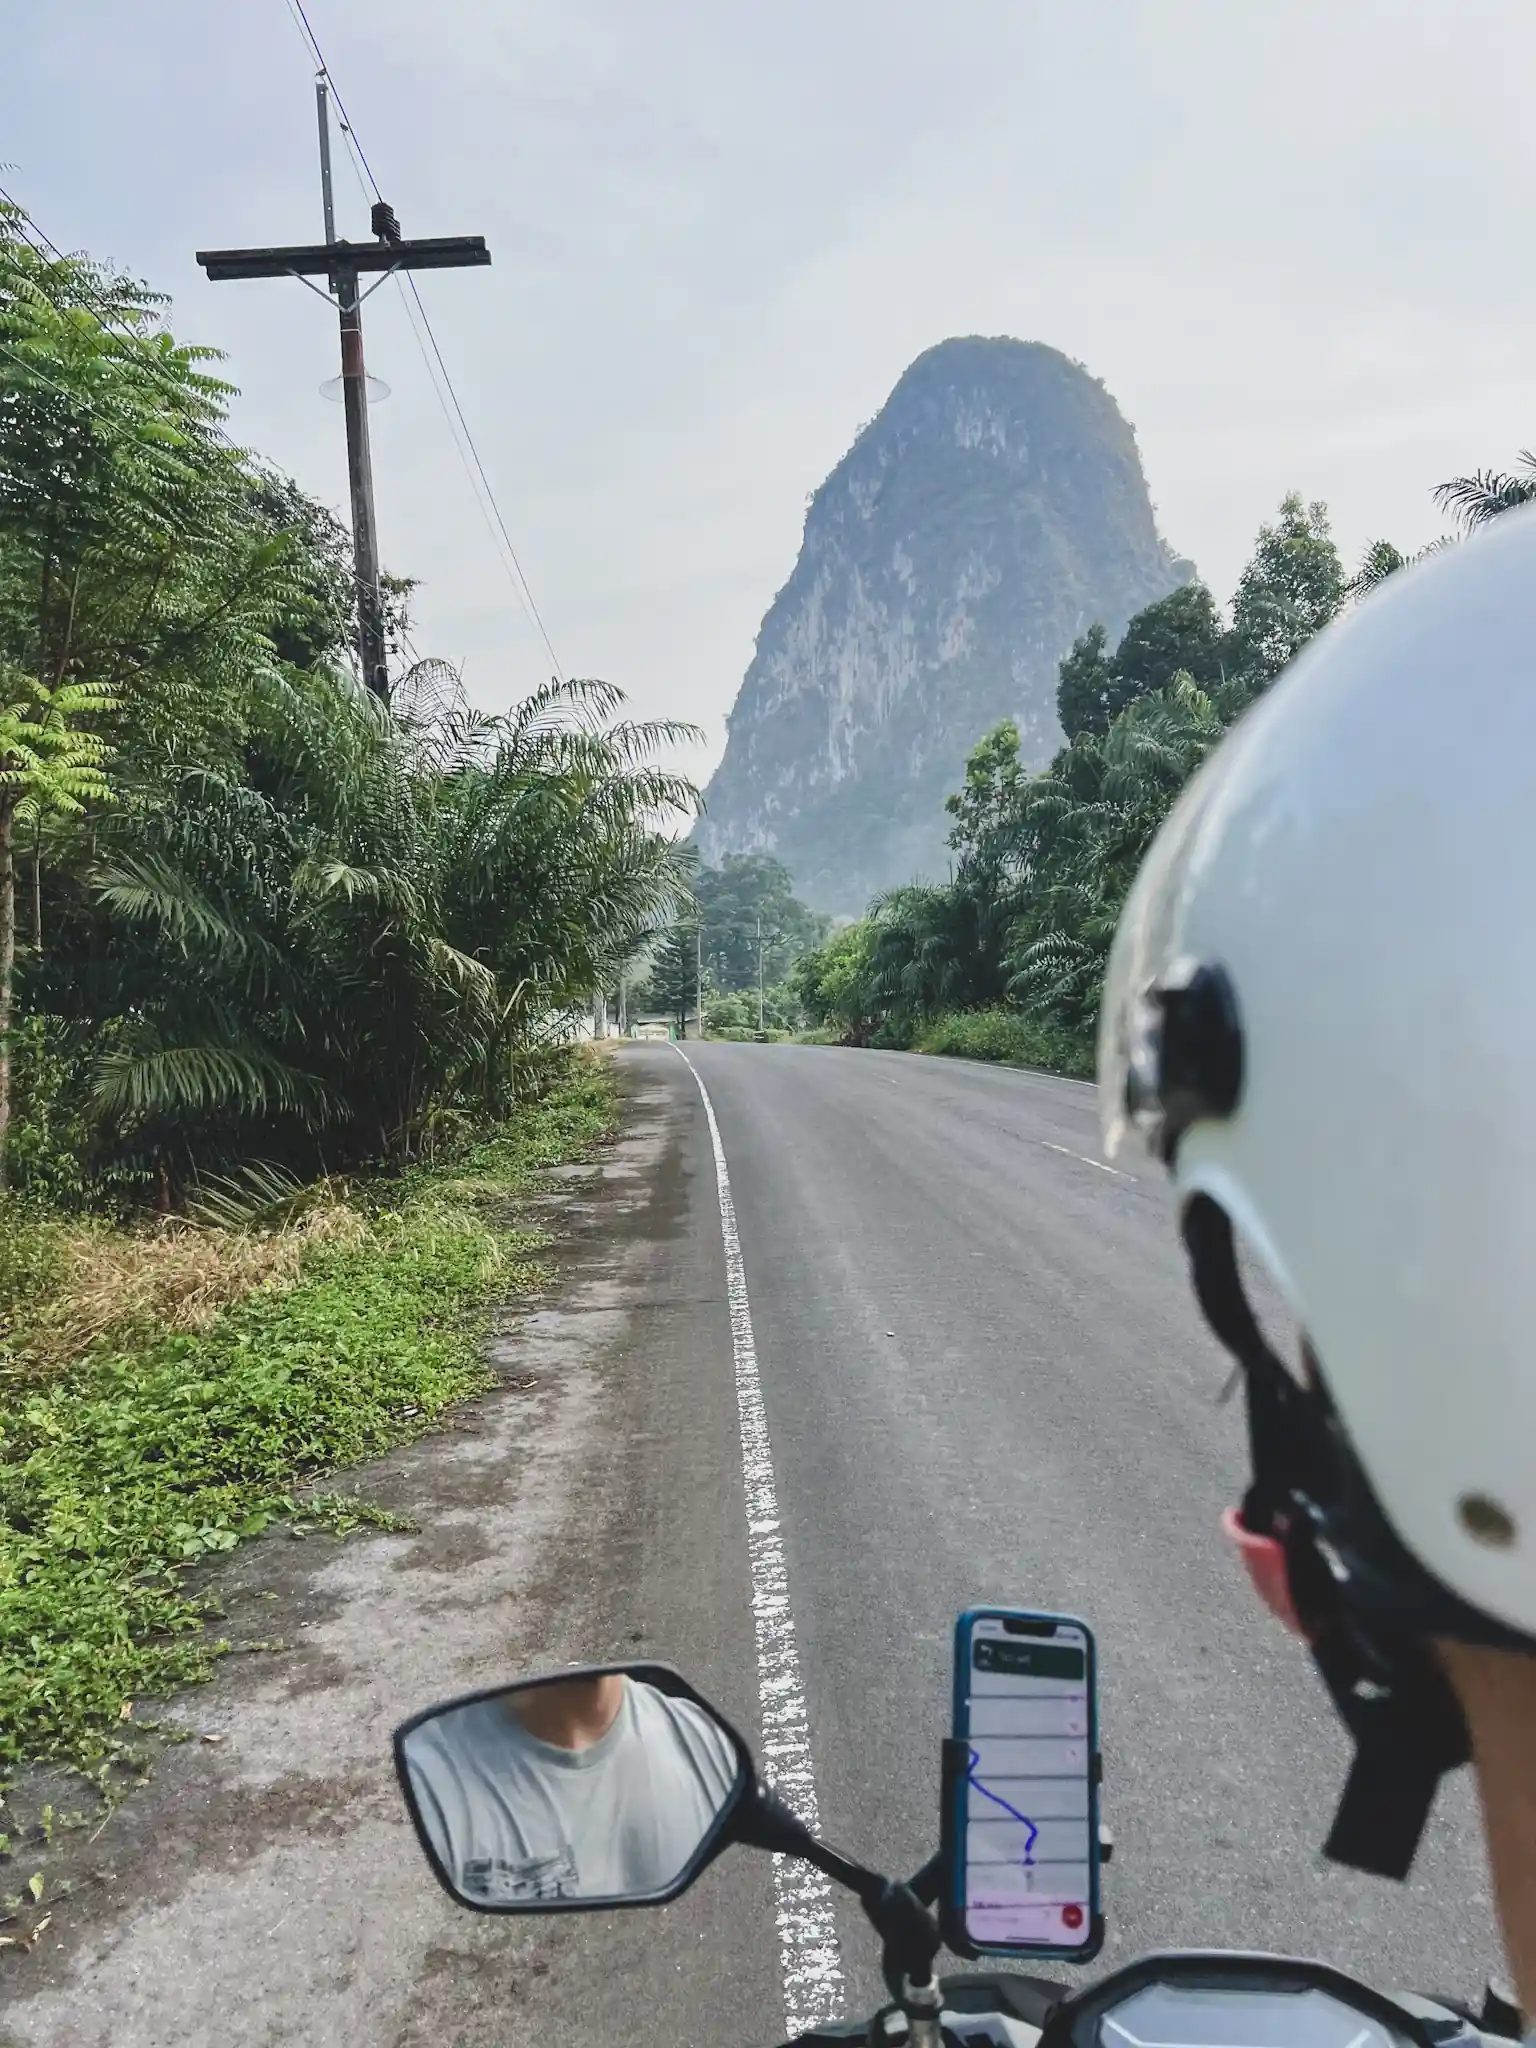 Thailand local road